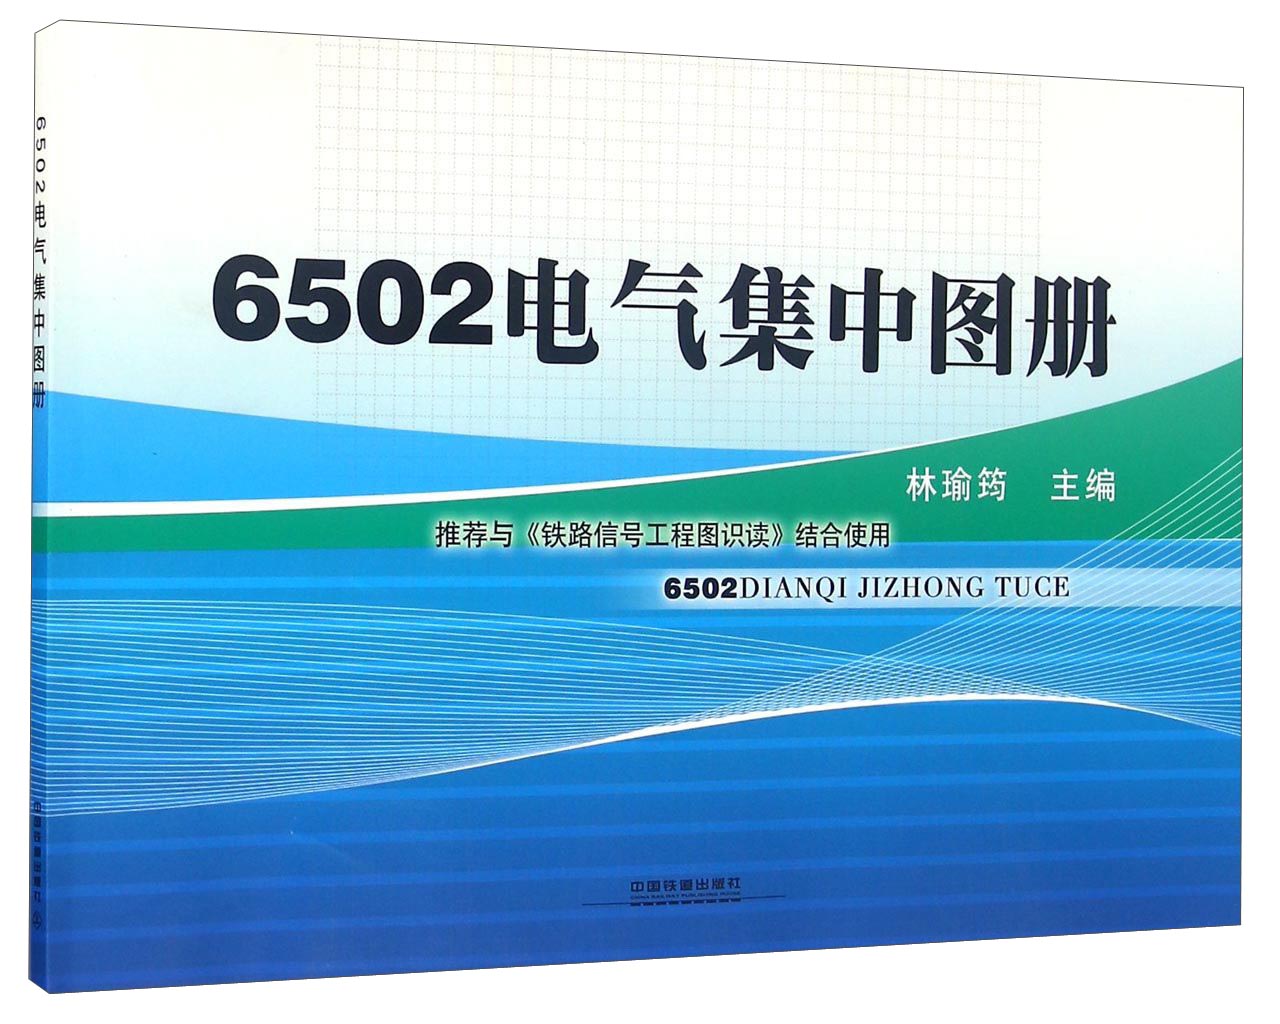 6502电气集中图册 word格式下载